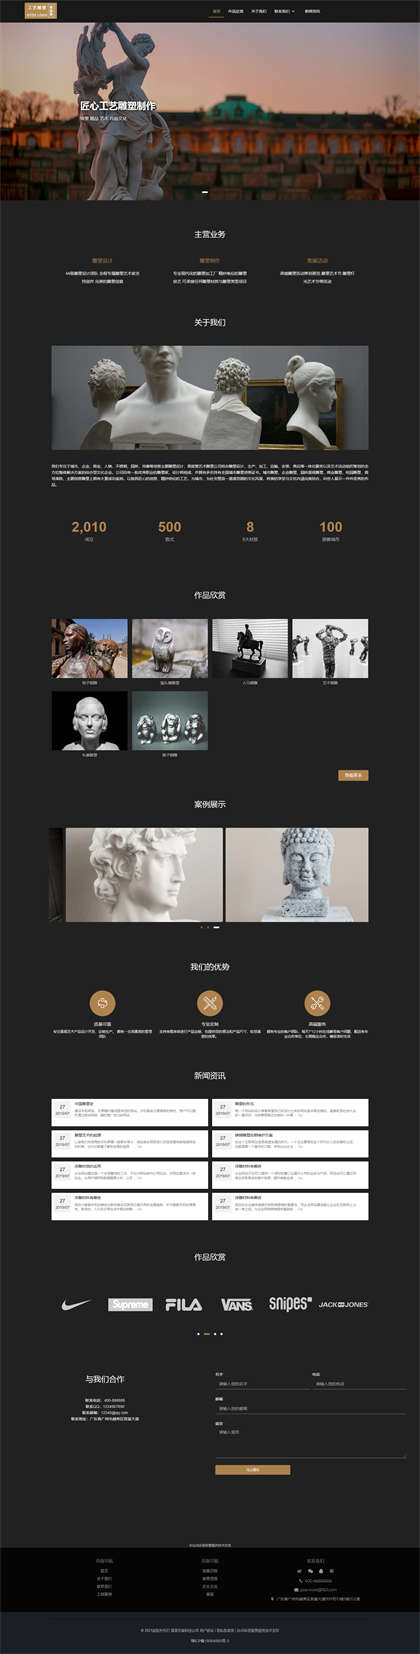 雕塑设计-工艺雕塑-人像雕塑-工艺品制作网站模板网站模板图片